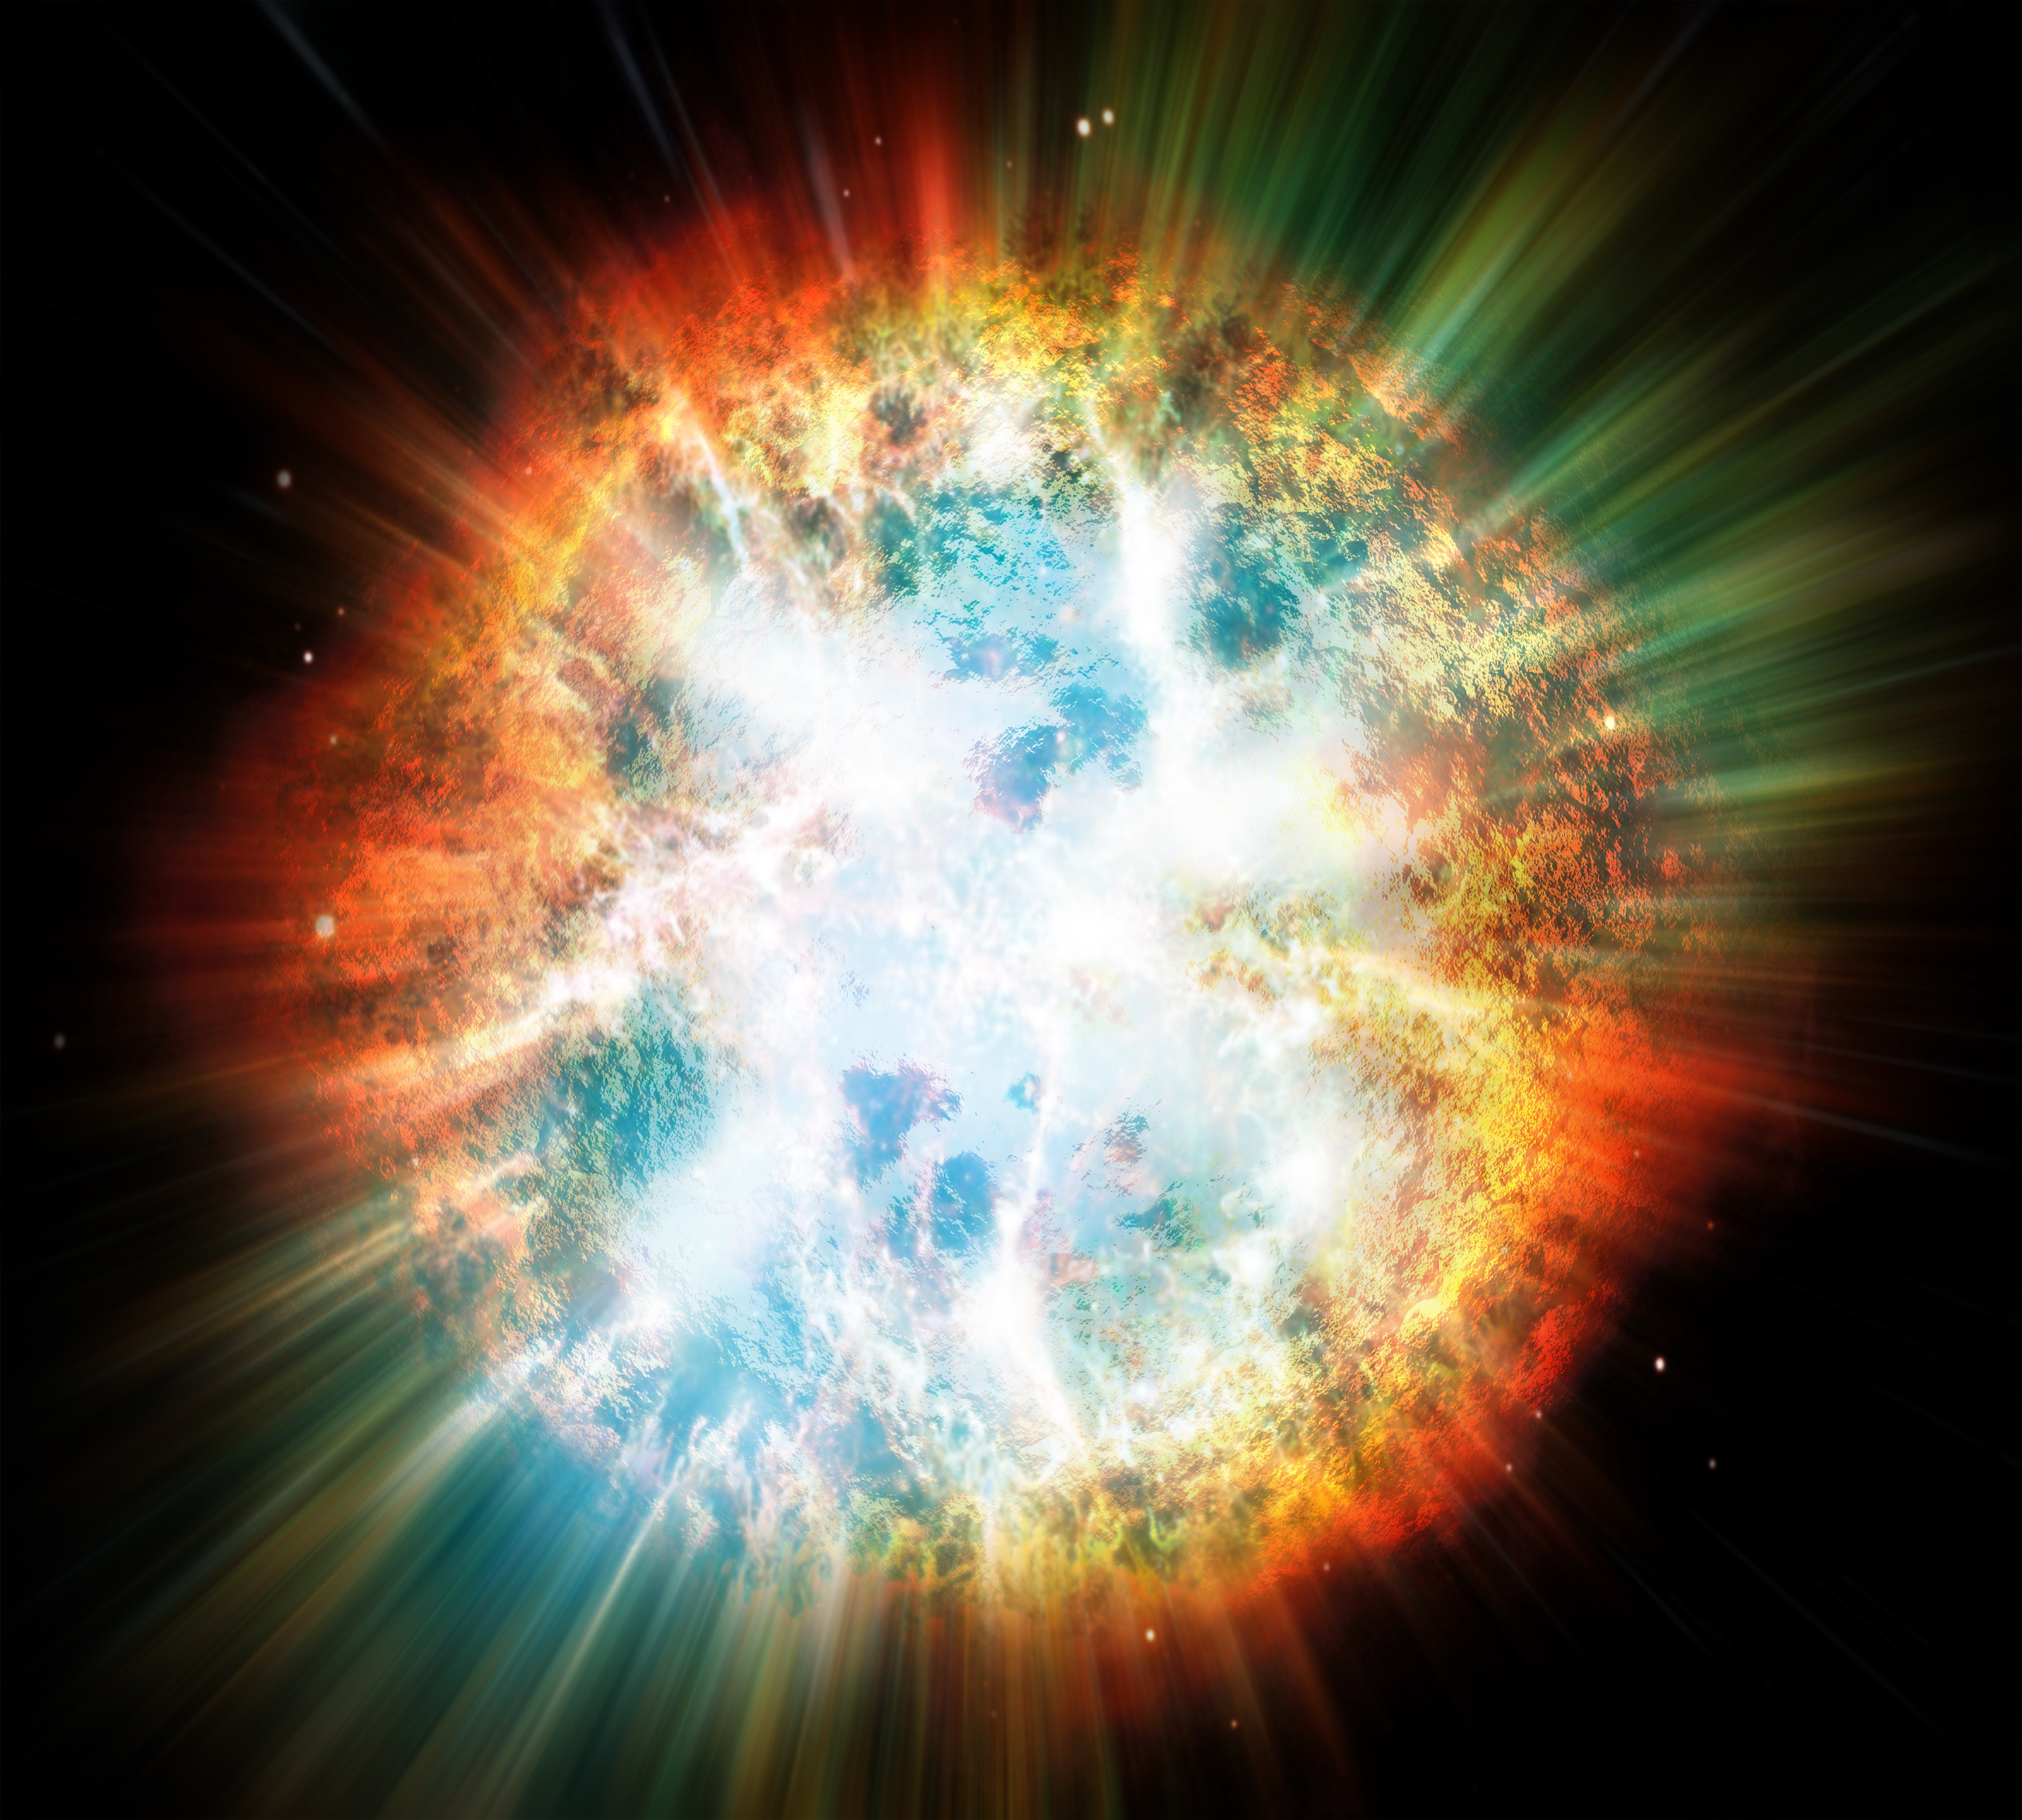 https://d.newsweek.com/en/full/2136318/supernova-space.jpg